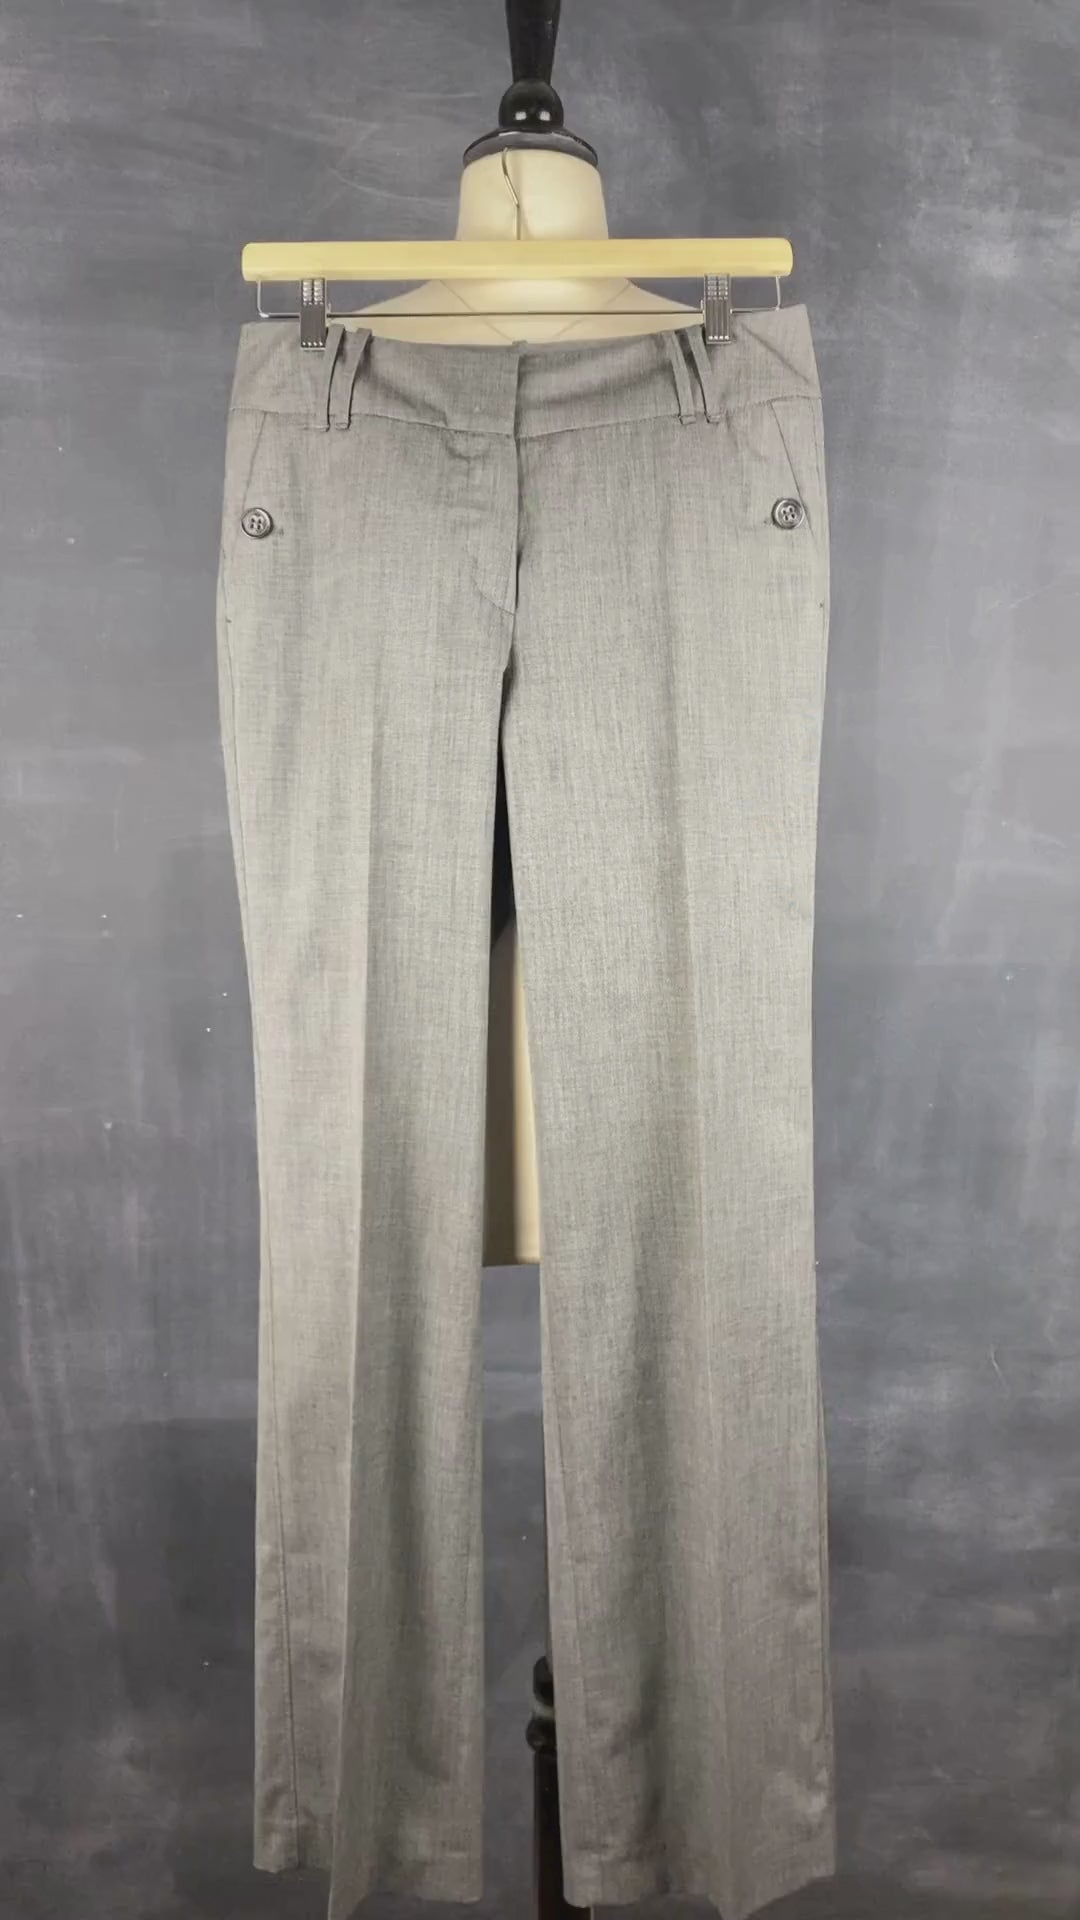 Pantalon gris droit fluide Gardeur, taille estimée à 6. Vue de la vidéo qui présente tous les détails du pantalon.